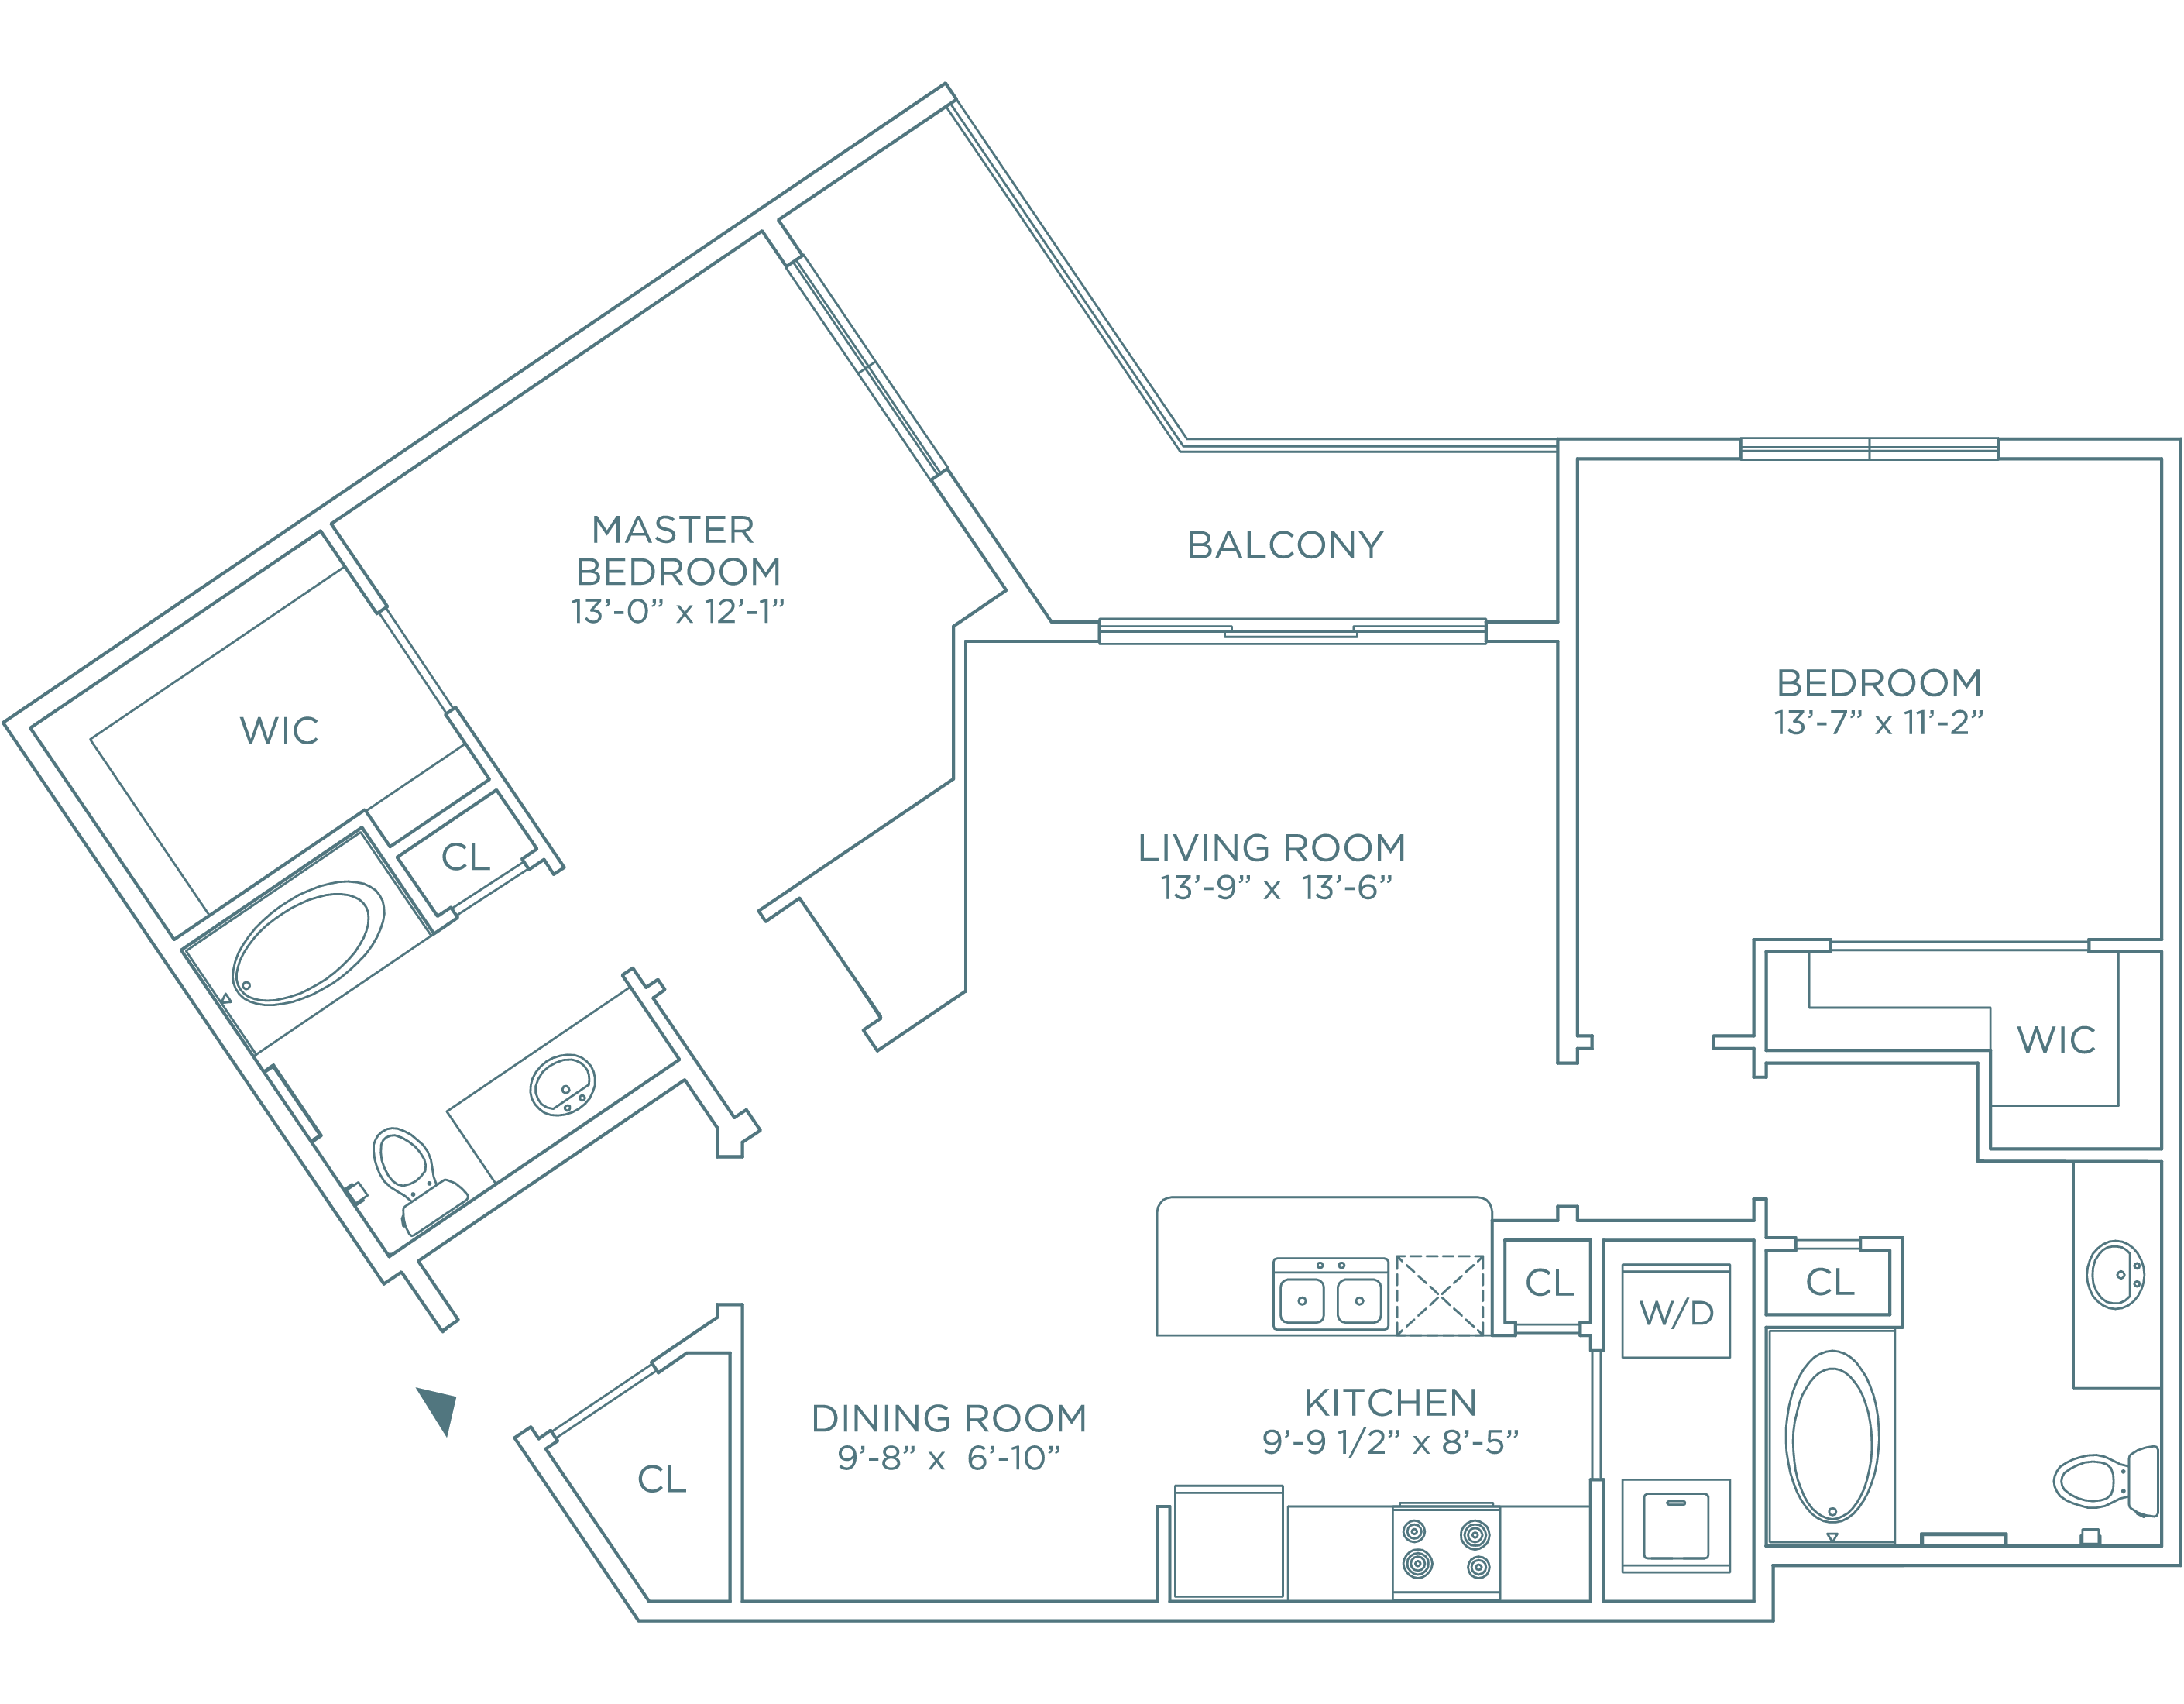 The Preserve - Residence J 2 bedroom, 2 bathroom spacious floorplan